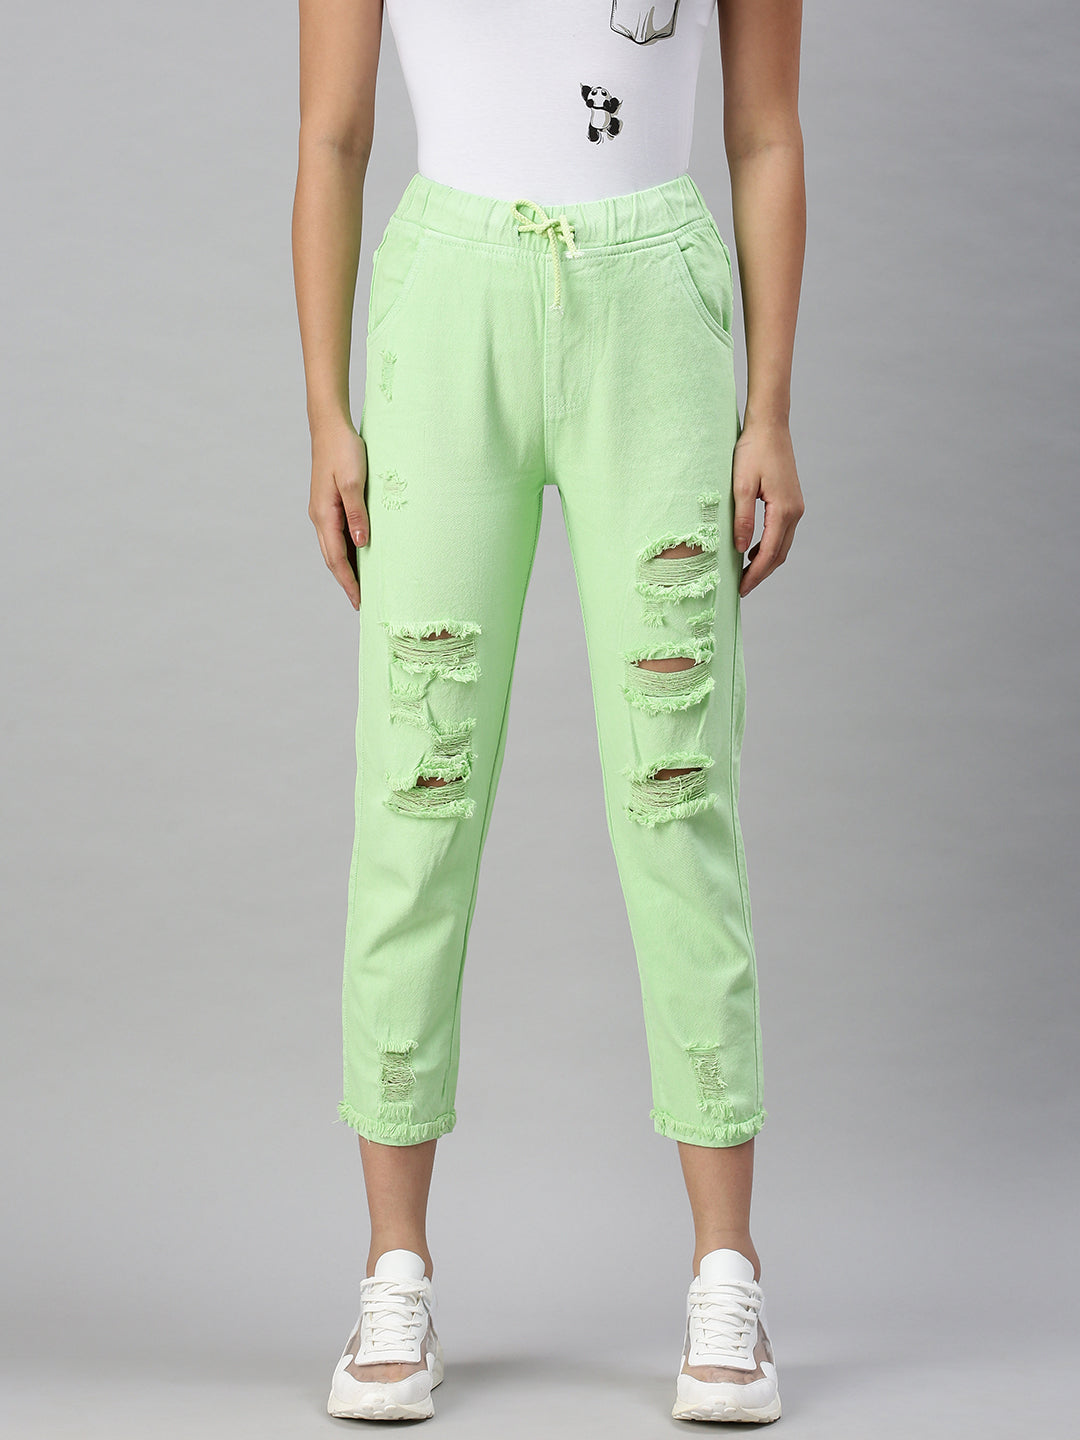 Women's Denim Jogger Lime Green Jeans